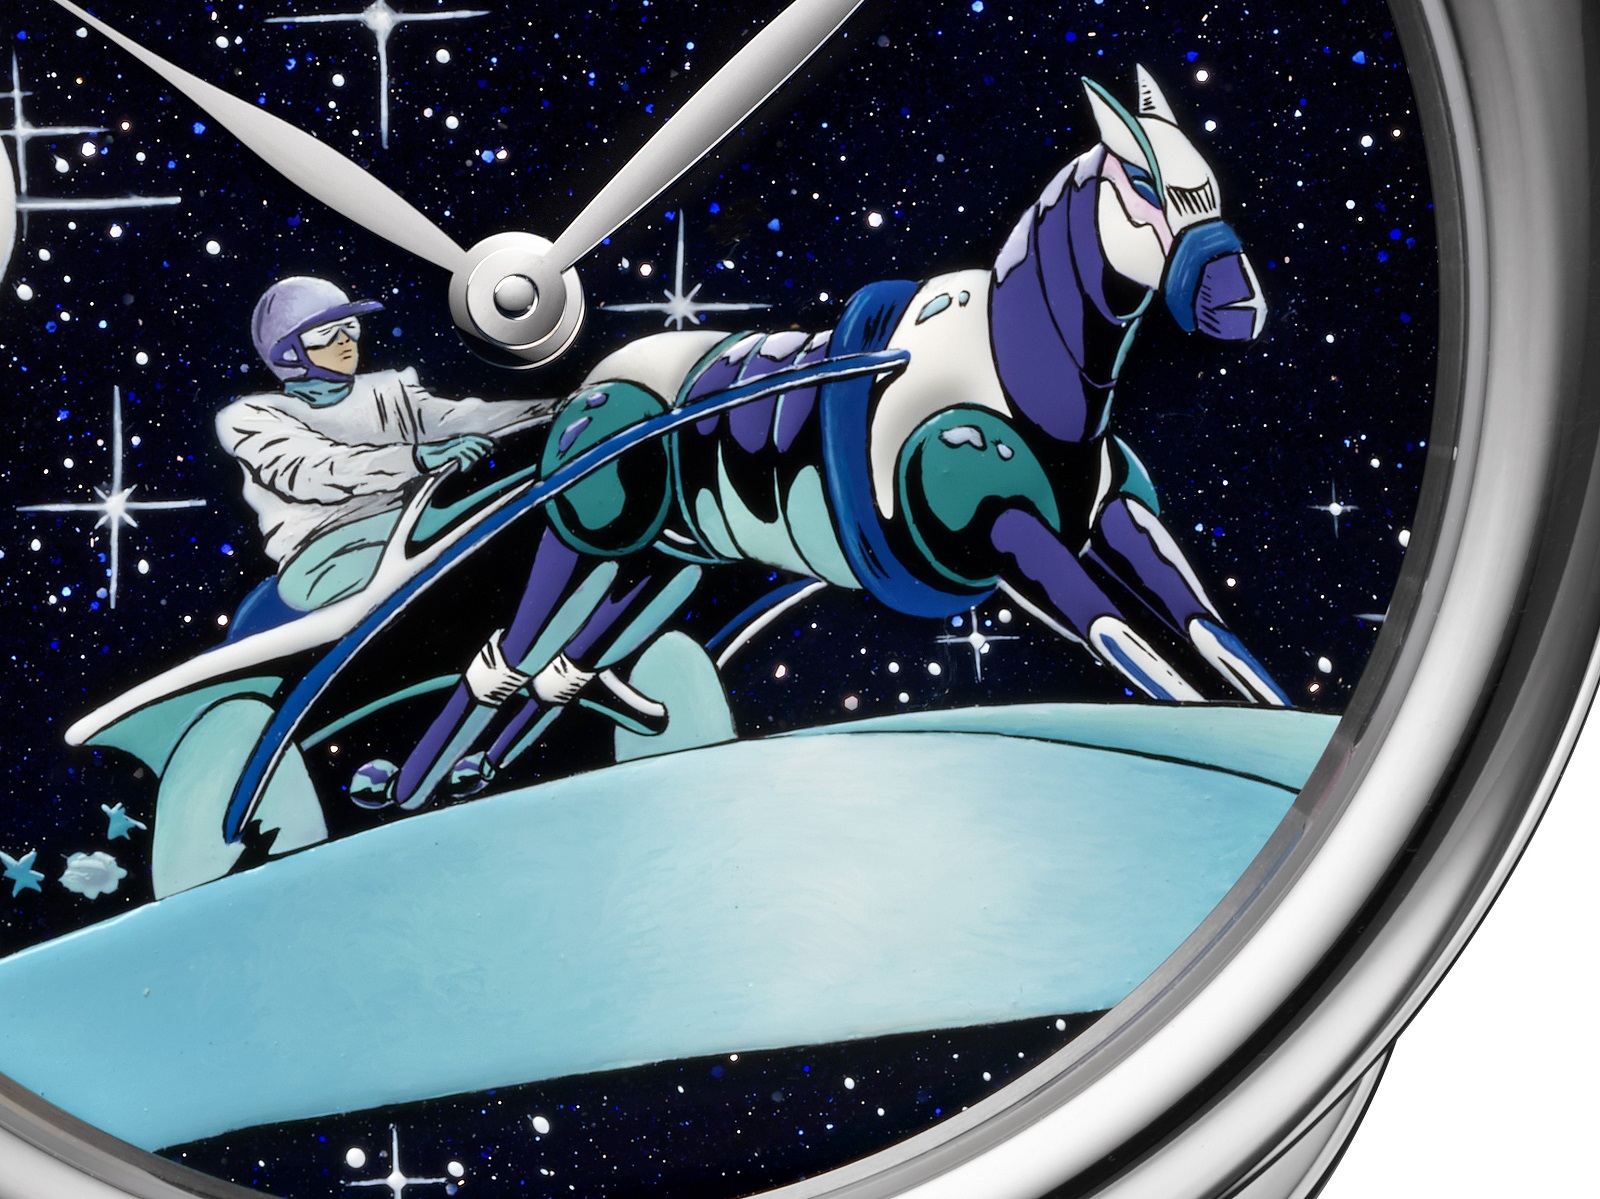 đồng hồ hermes arceau space derfy 2021